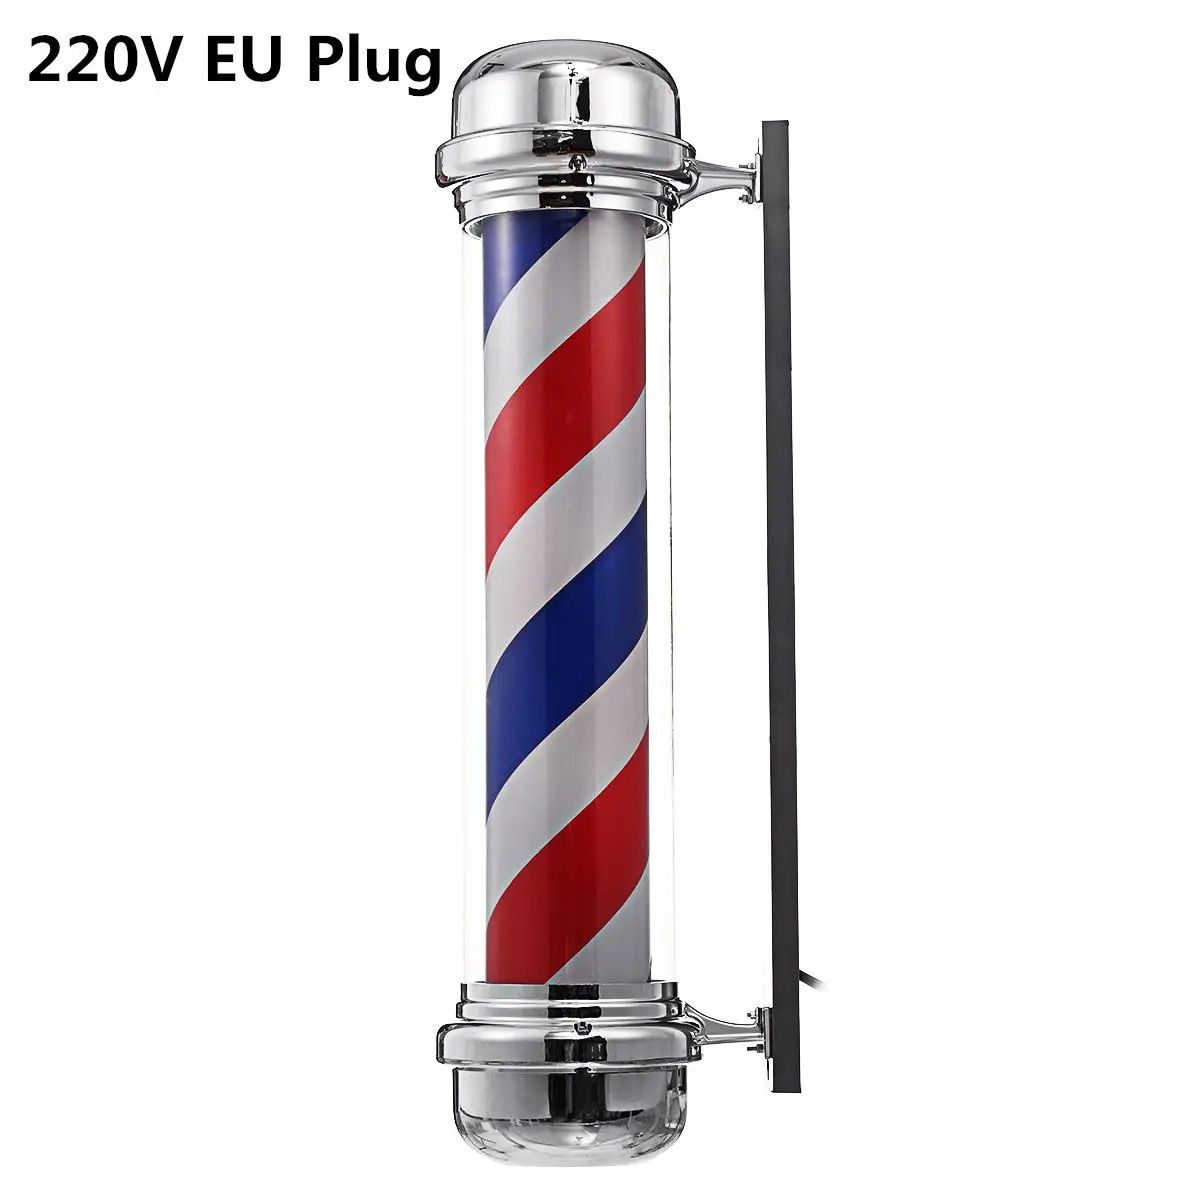 4 типа, светильник для парикмахерской в красную, белую, синюю полоску, вращающийся светодиодный светильник, лампа для парикмахерской, наружная подвесная вывеска, лампа - Испускаемый цвет: 220V EU Plug